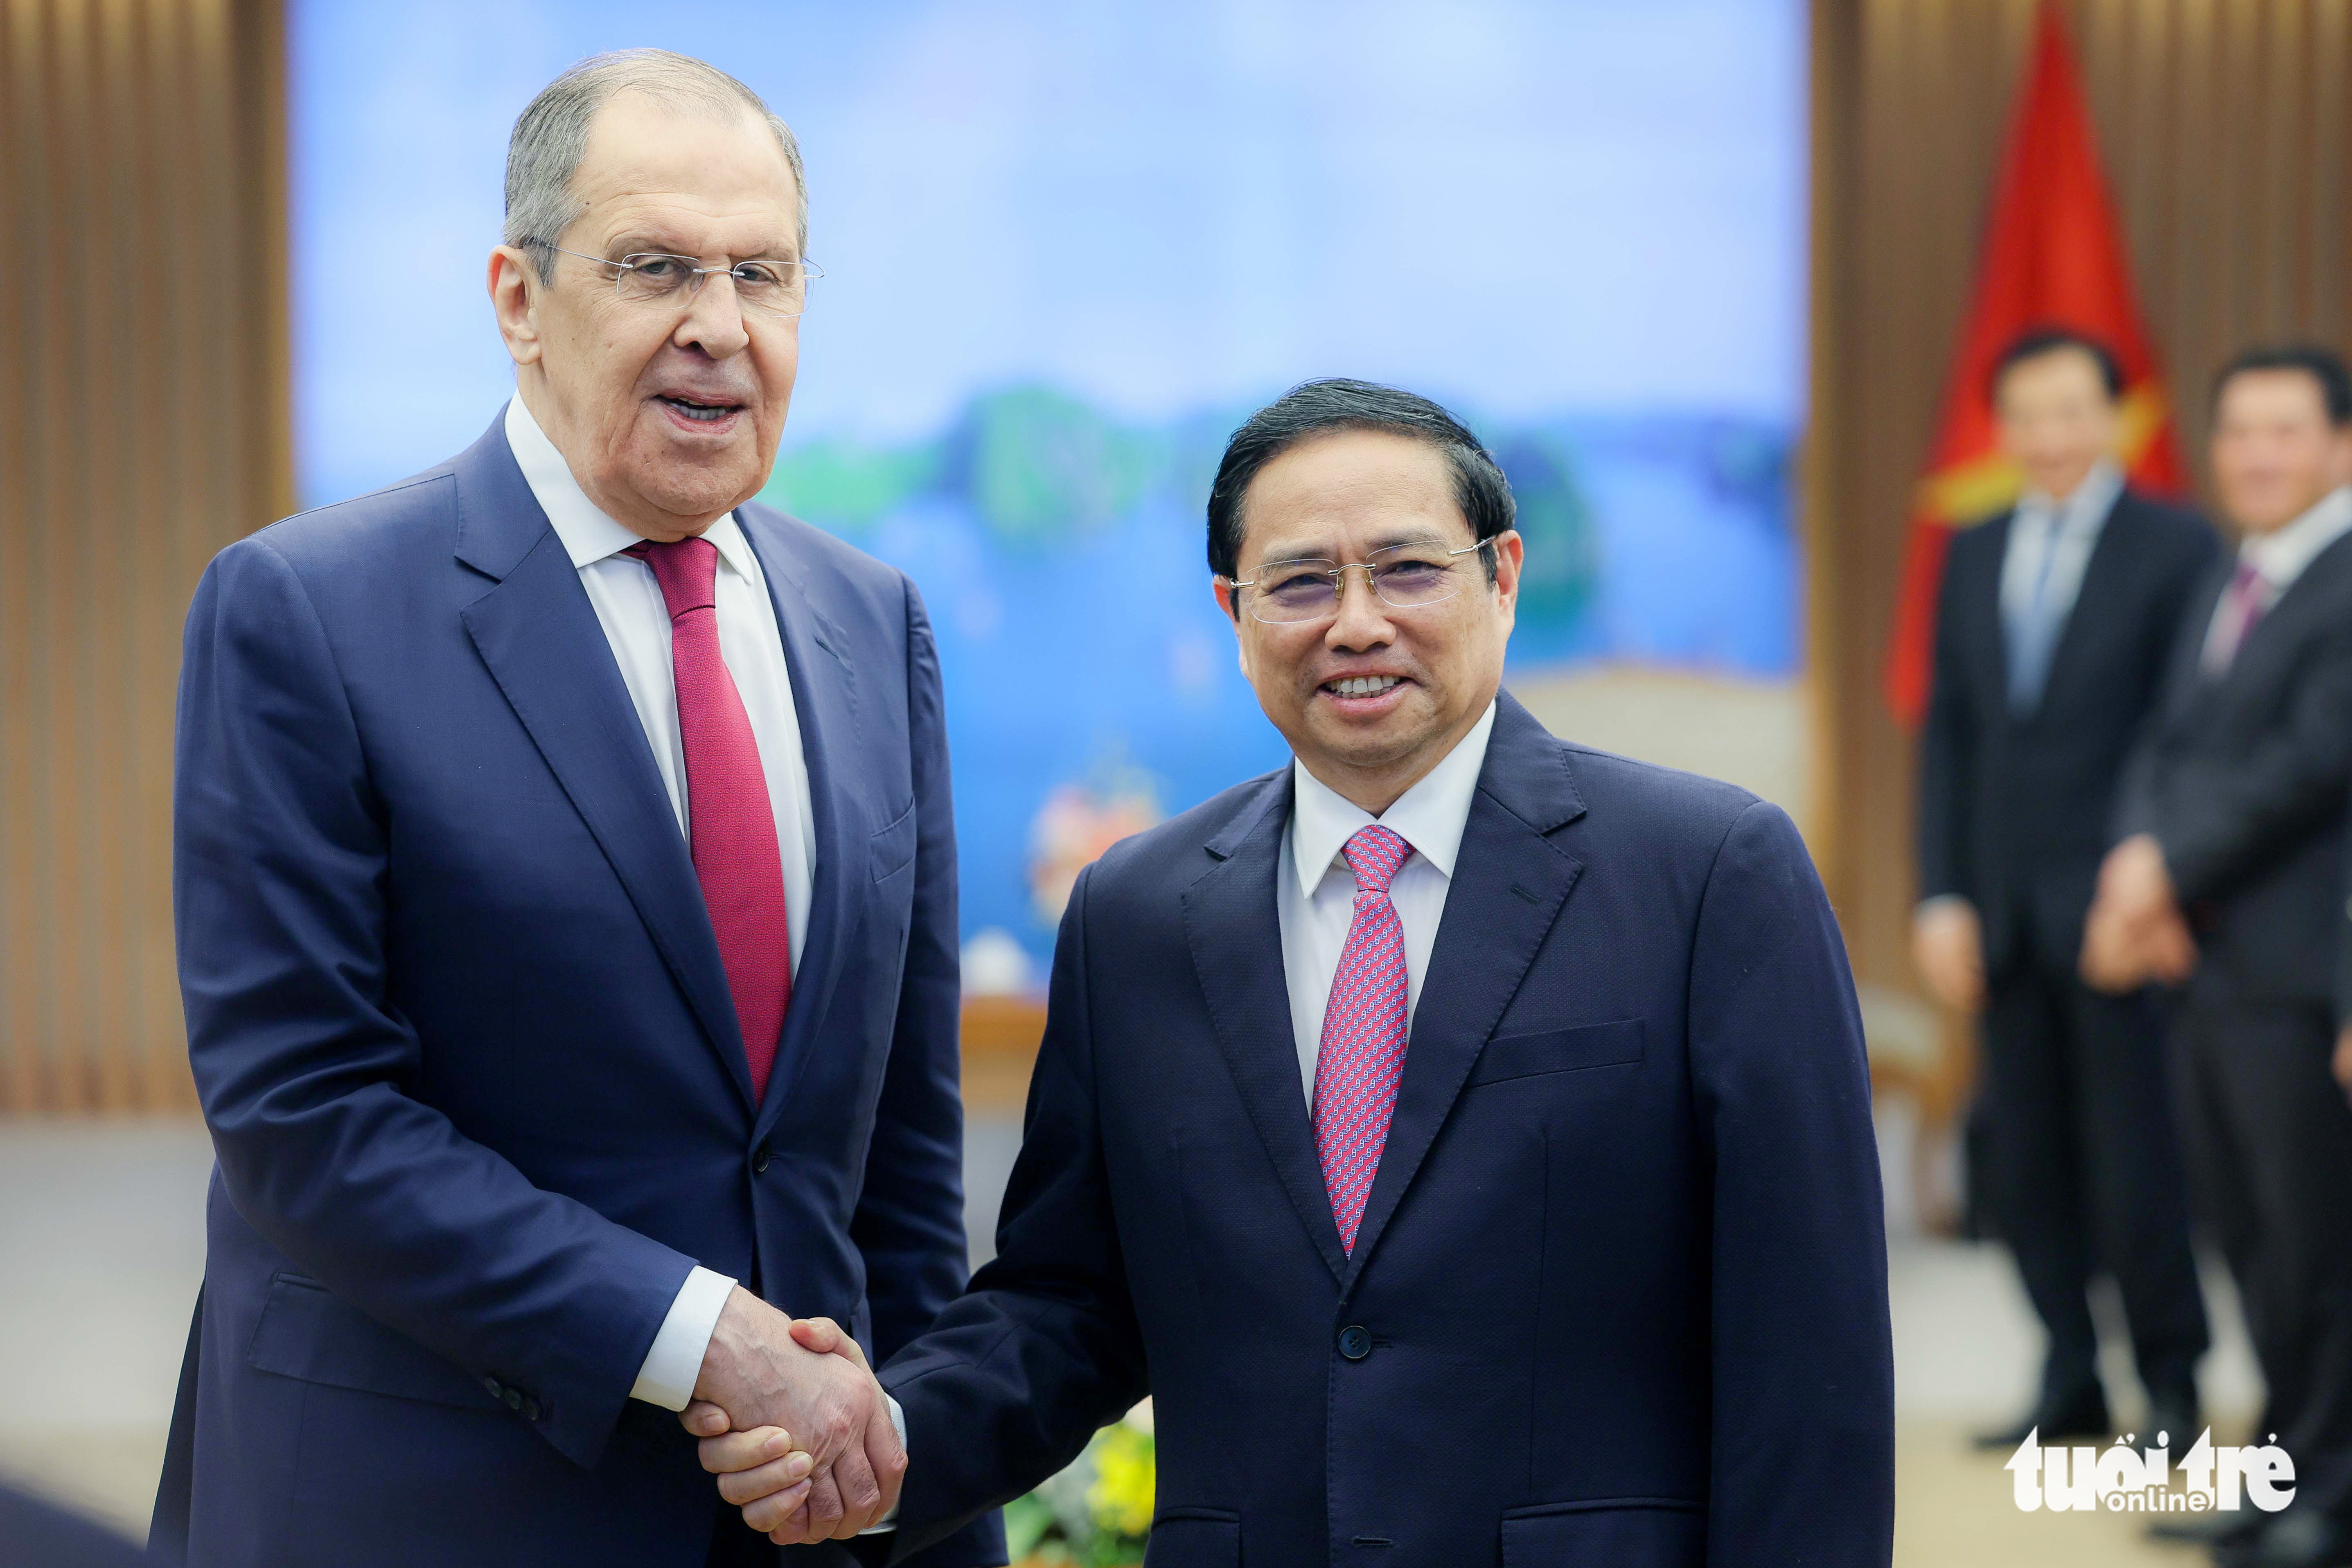 Vietnam seeks to deepen ties with Russia: premier